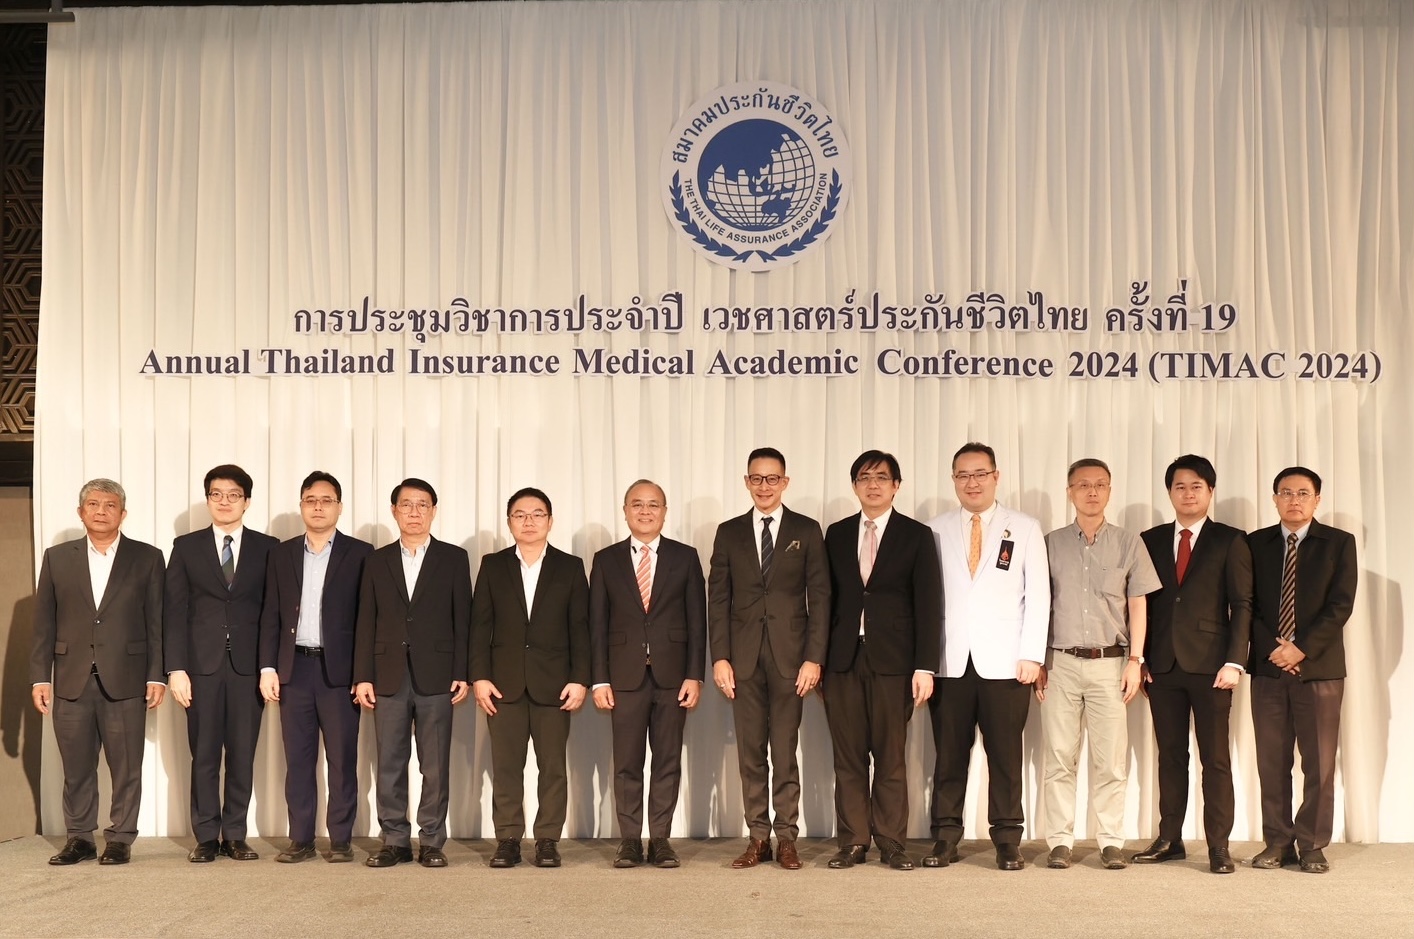 สมาคมประกันชีวิตไทยจัดการประชุมวิชาการประจำปี เวชศาสตร์ประกันชีวิตไทย ครั้งที่ 19